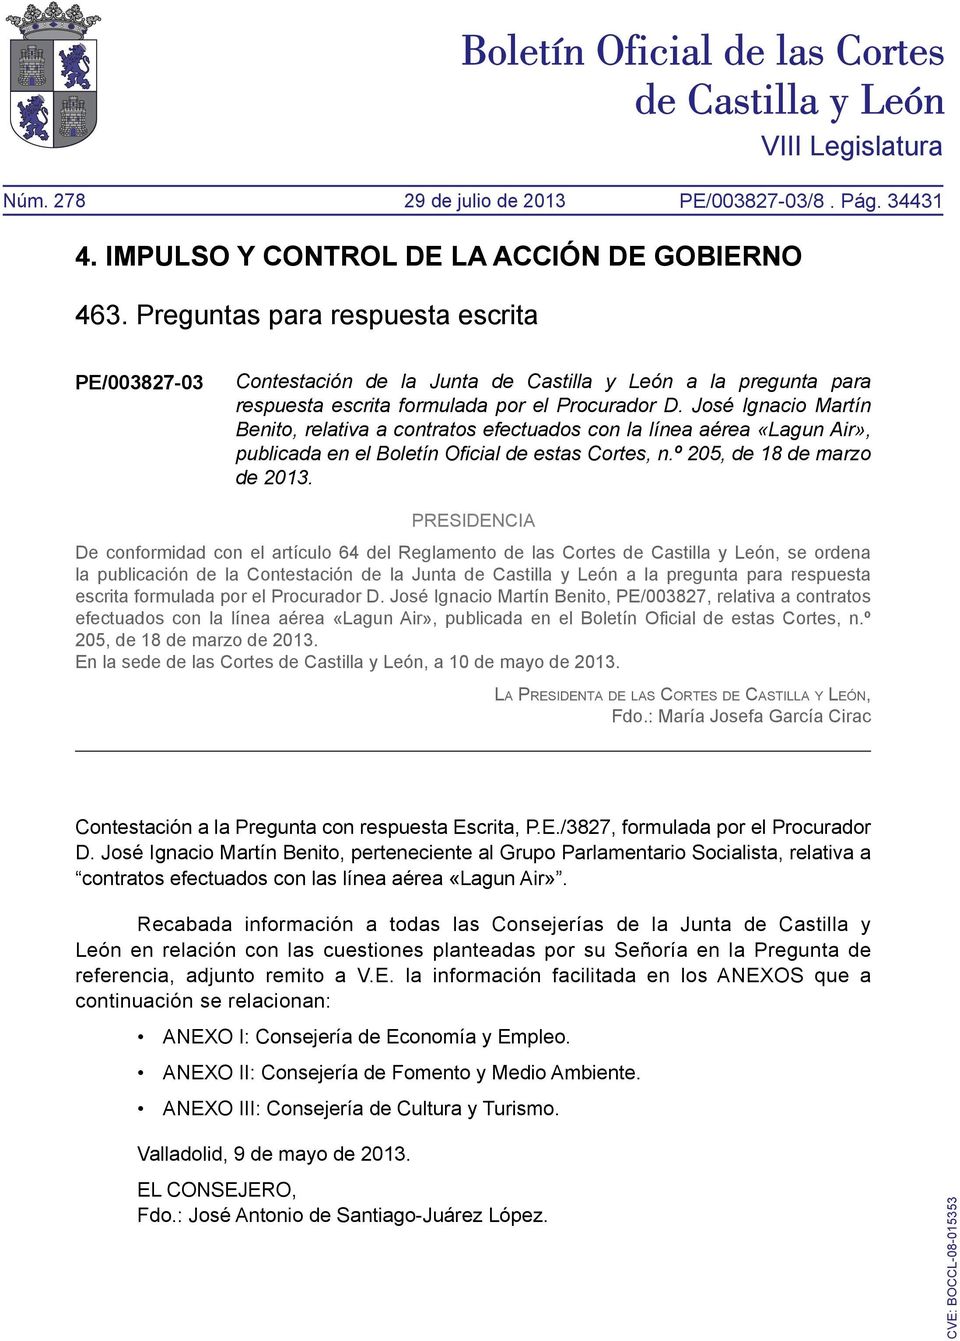 PRESIDENCIA De conformidad con el artículo 64 del Reglamento de las Cortes de Castilla y León, se ordena la publicación de la Contestación de la Junta de Castilla y León a la pregunta para respuesta